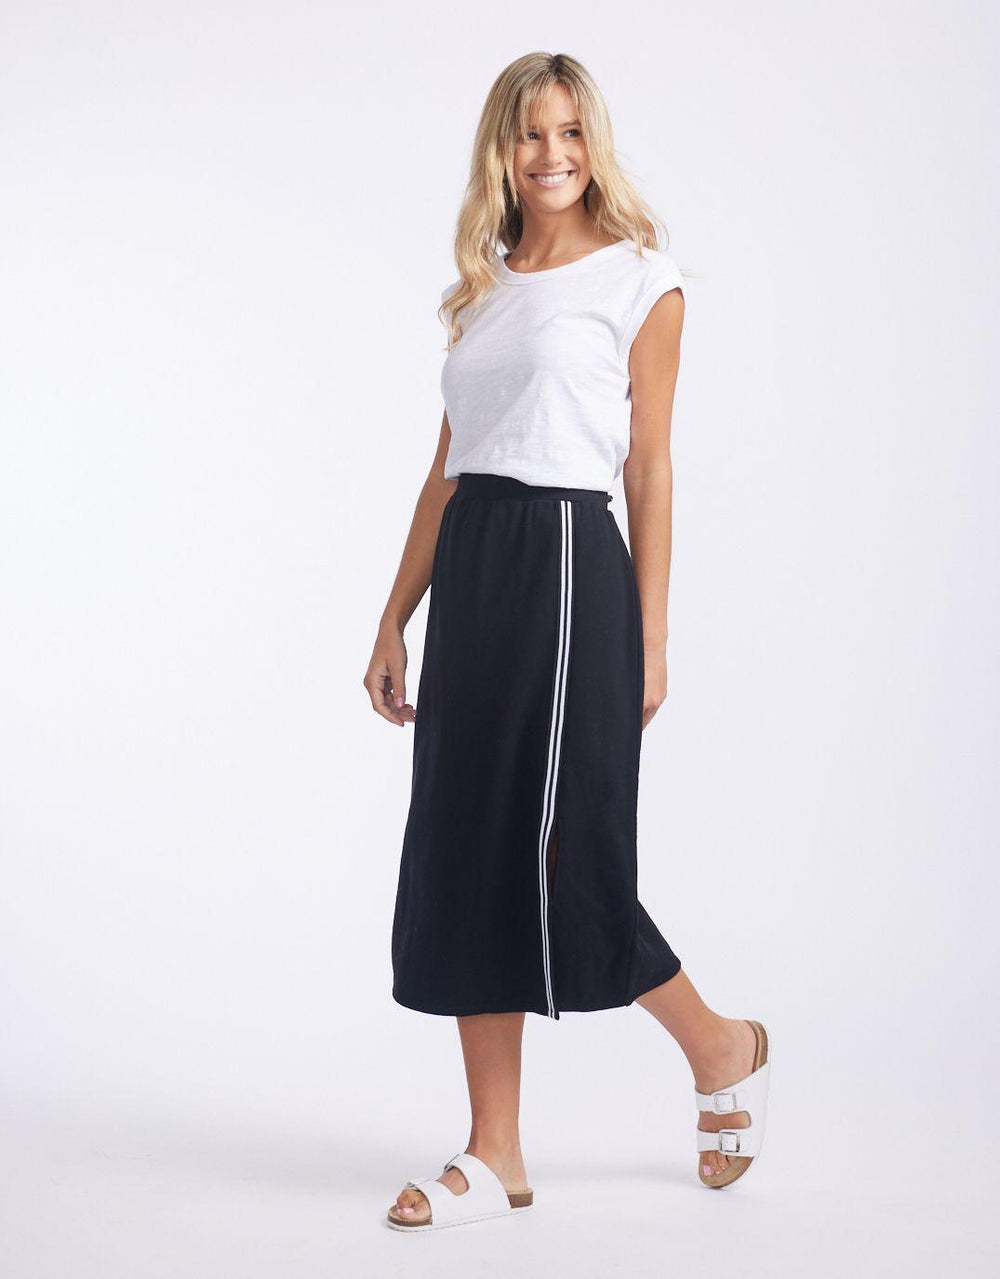 White & Co. - Off-Duty Trim Skirt - Black - White & Co Living Skirts